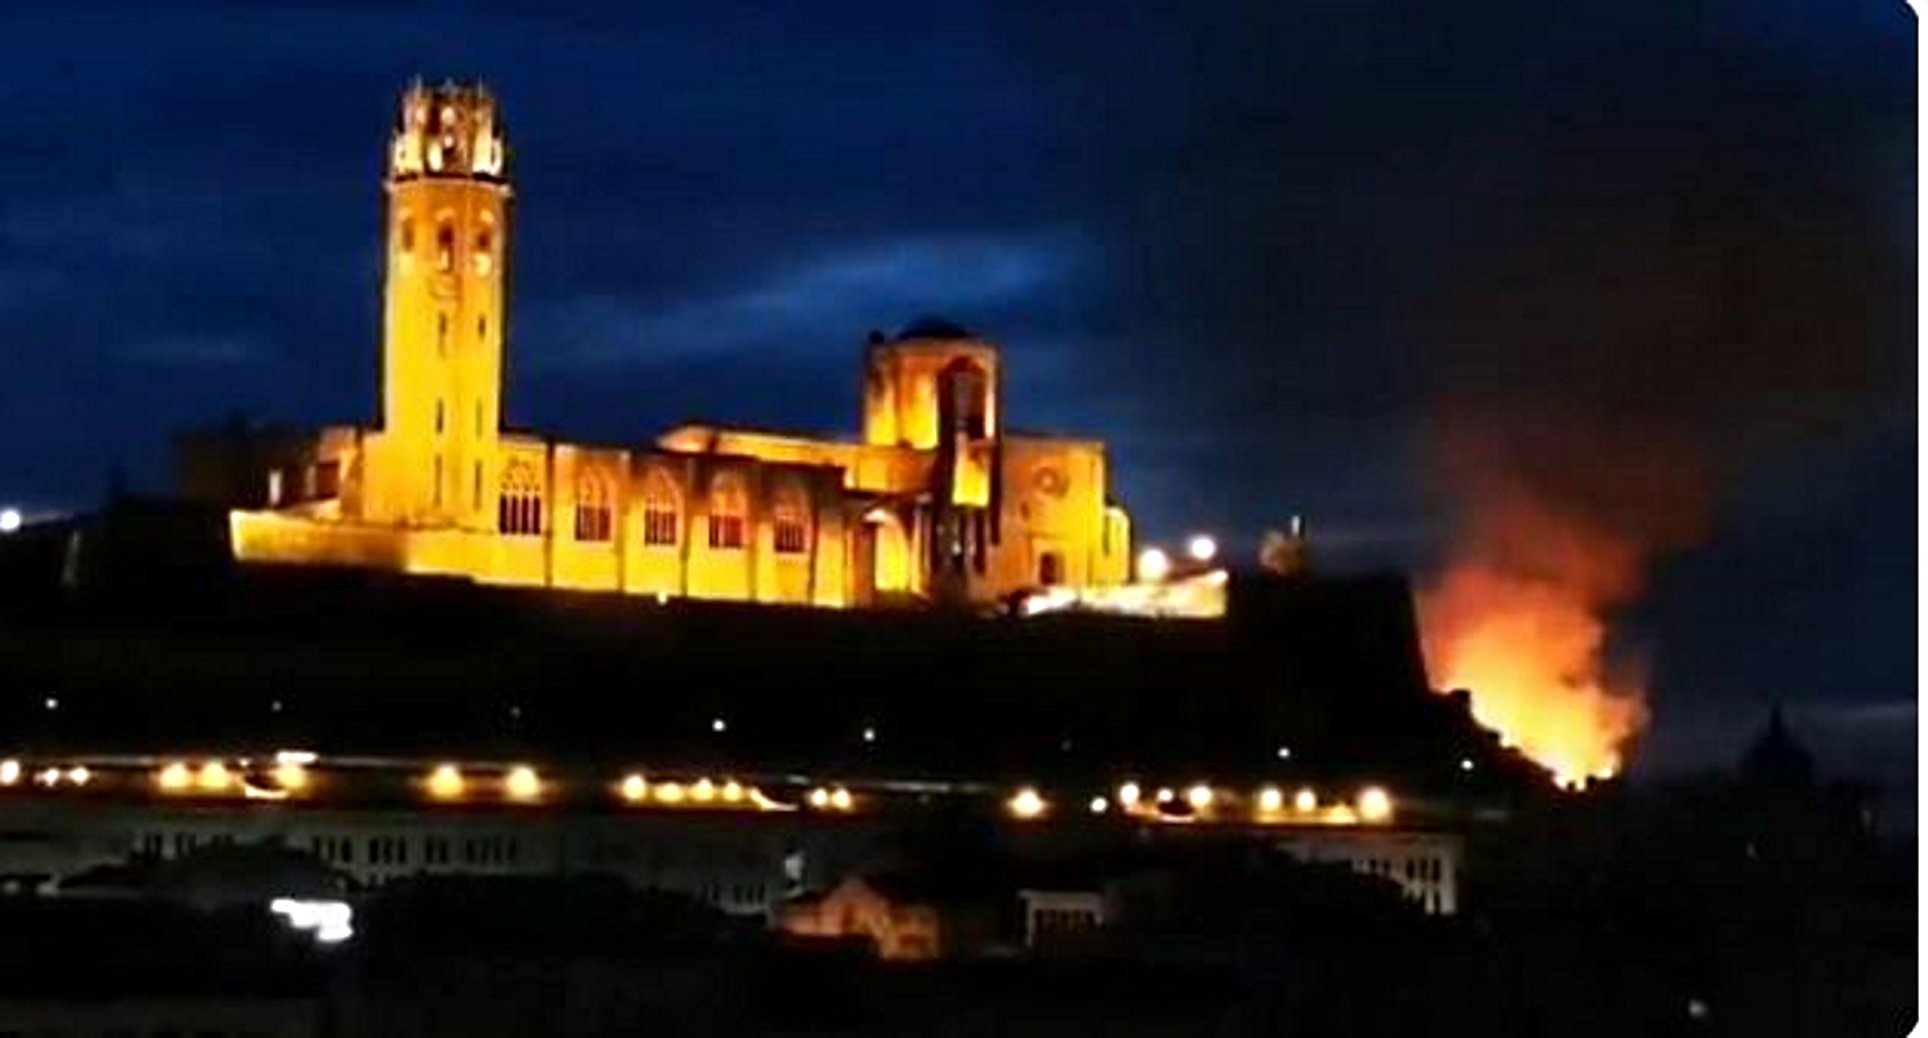 Incendi a tocar de la Seu Vella de Lleida